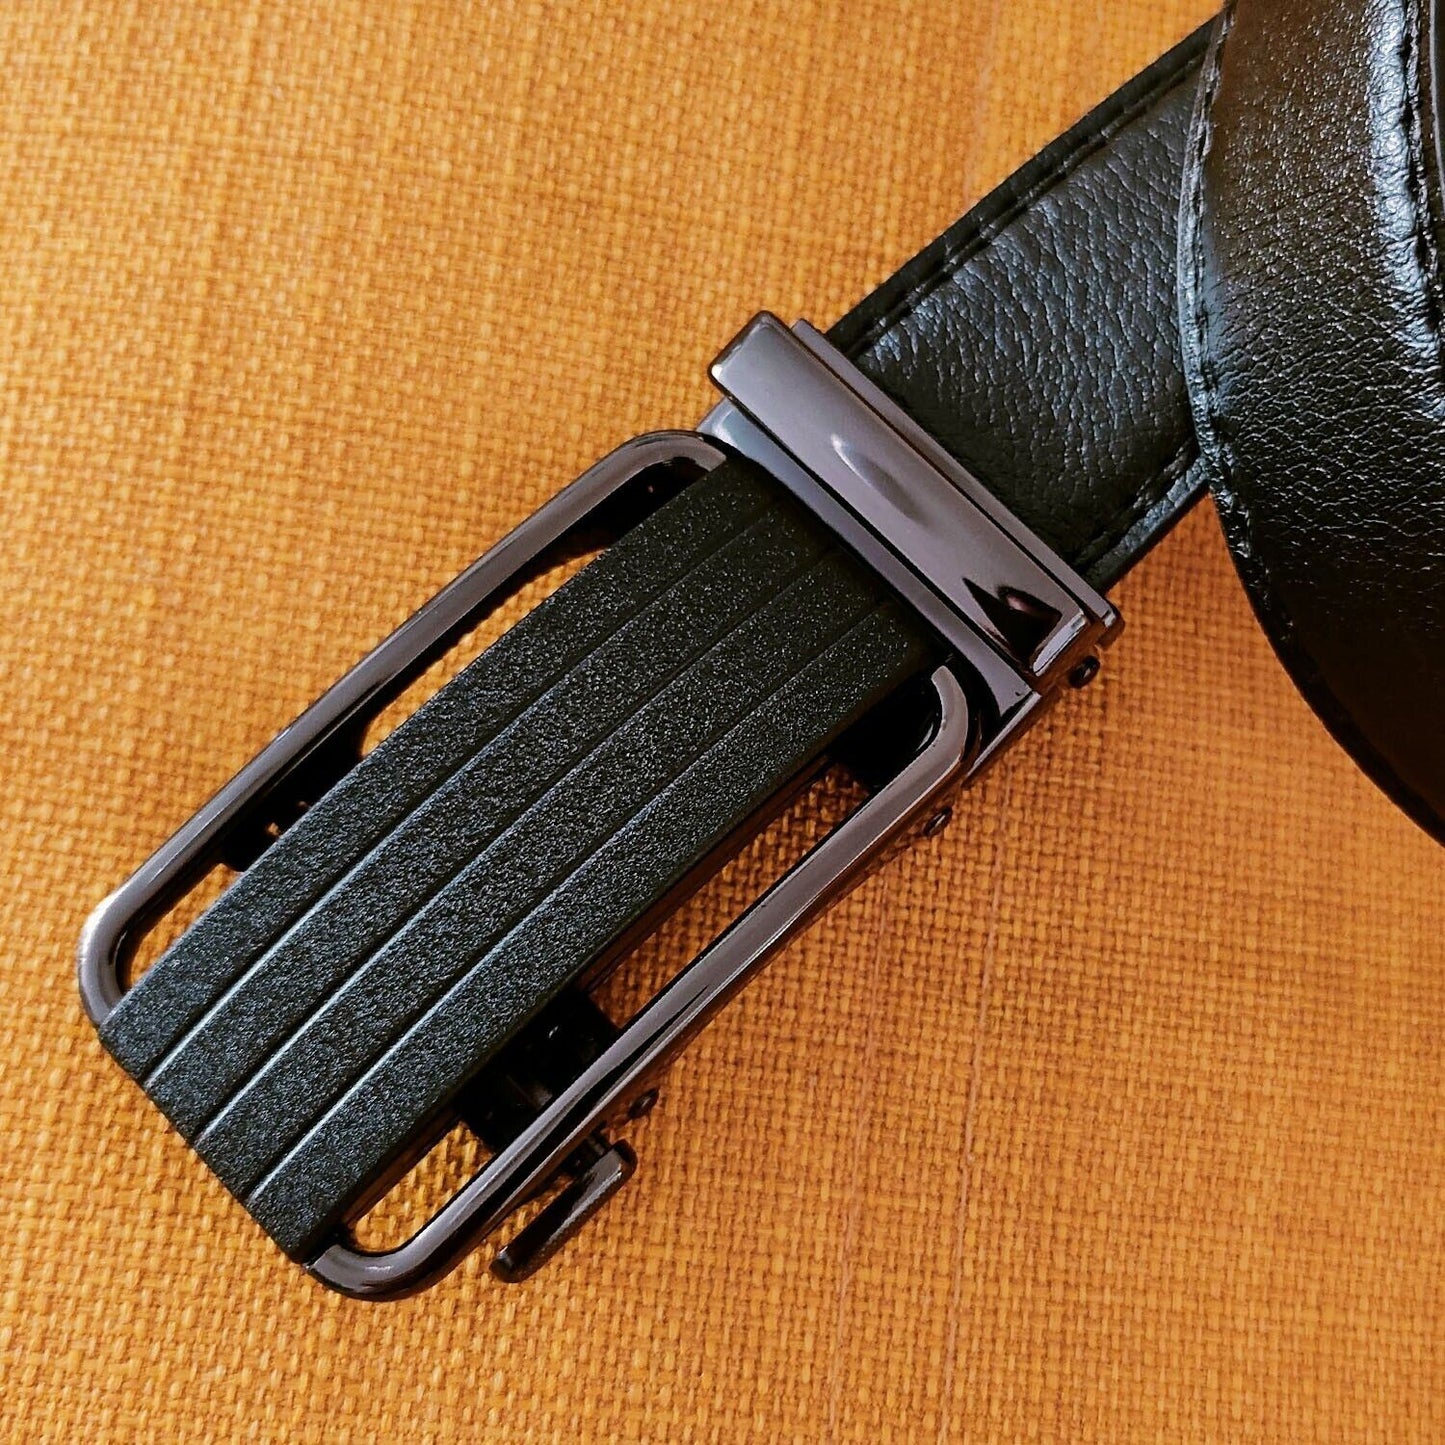 Men's Ratchet Belt Leather Mens Belt With Slide Buckle Ratchet Belts For Men USA